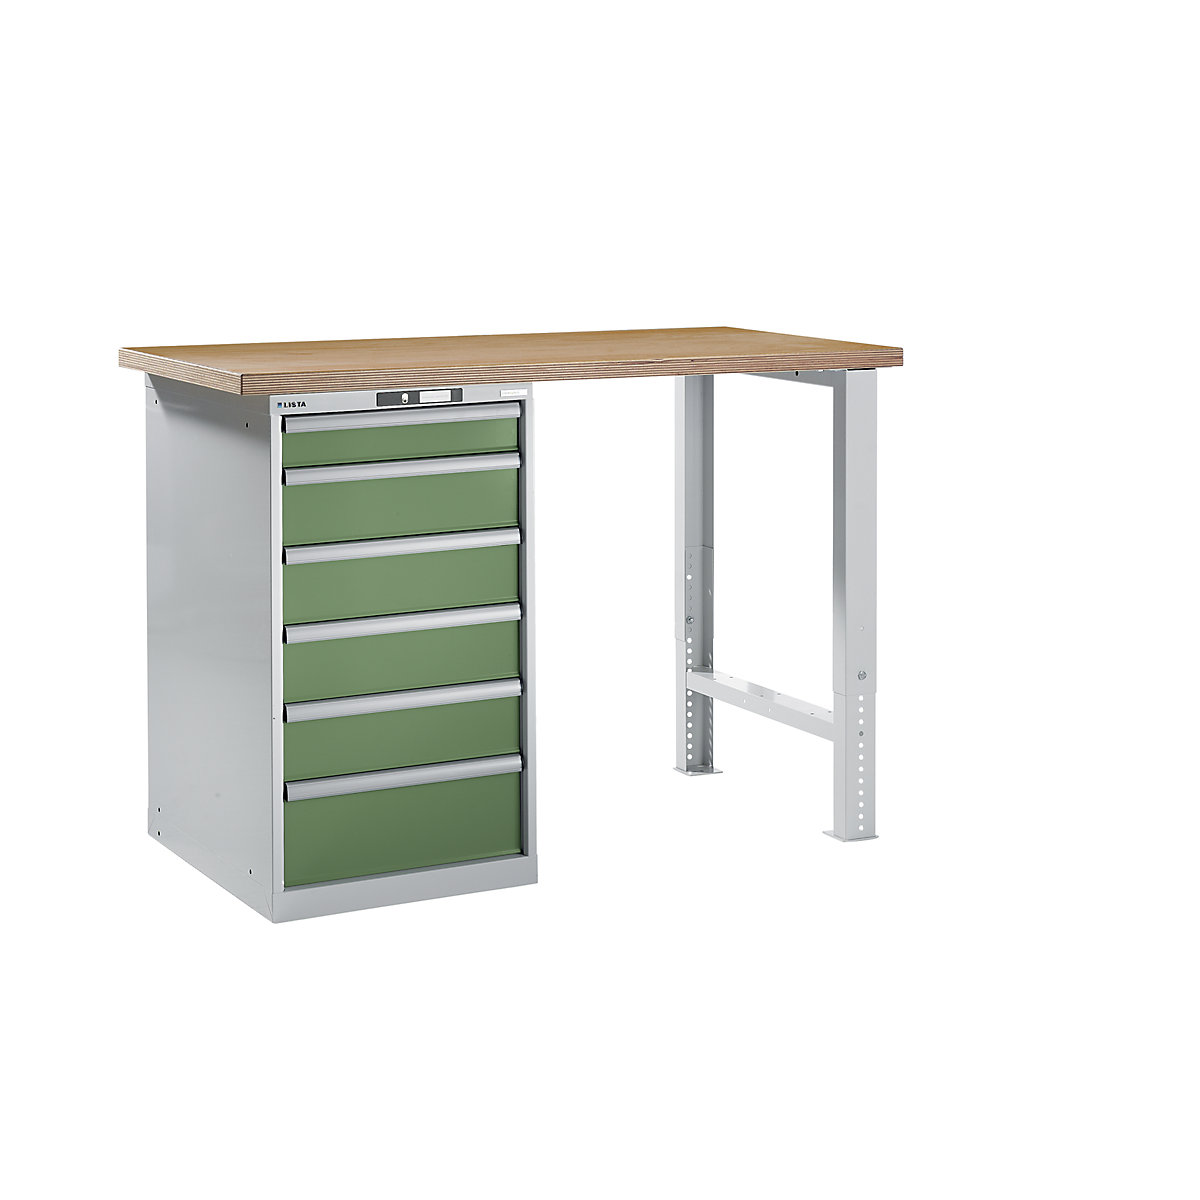 LISTA – Radna klupa kao modularni sustav, visina 1040 mm, ormar za postavljanje ispod stola, 6 ladice, u rezeda zelenoj boji, širina stola 1500 mm